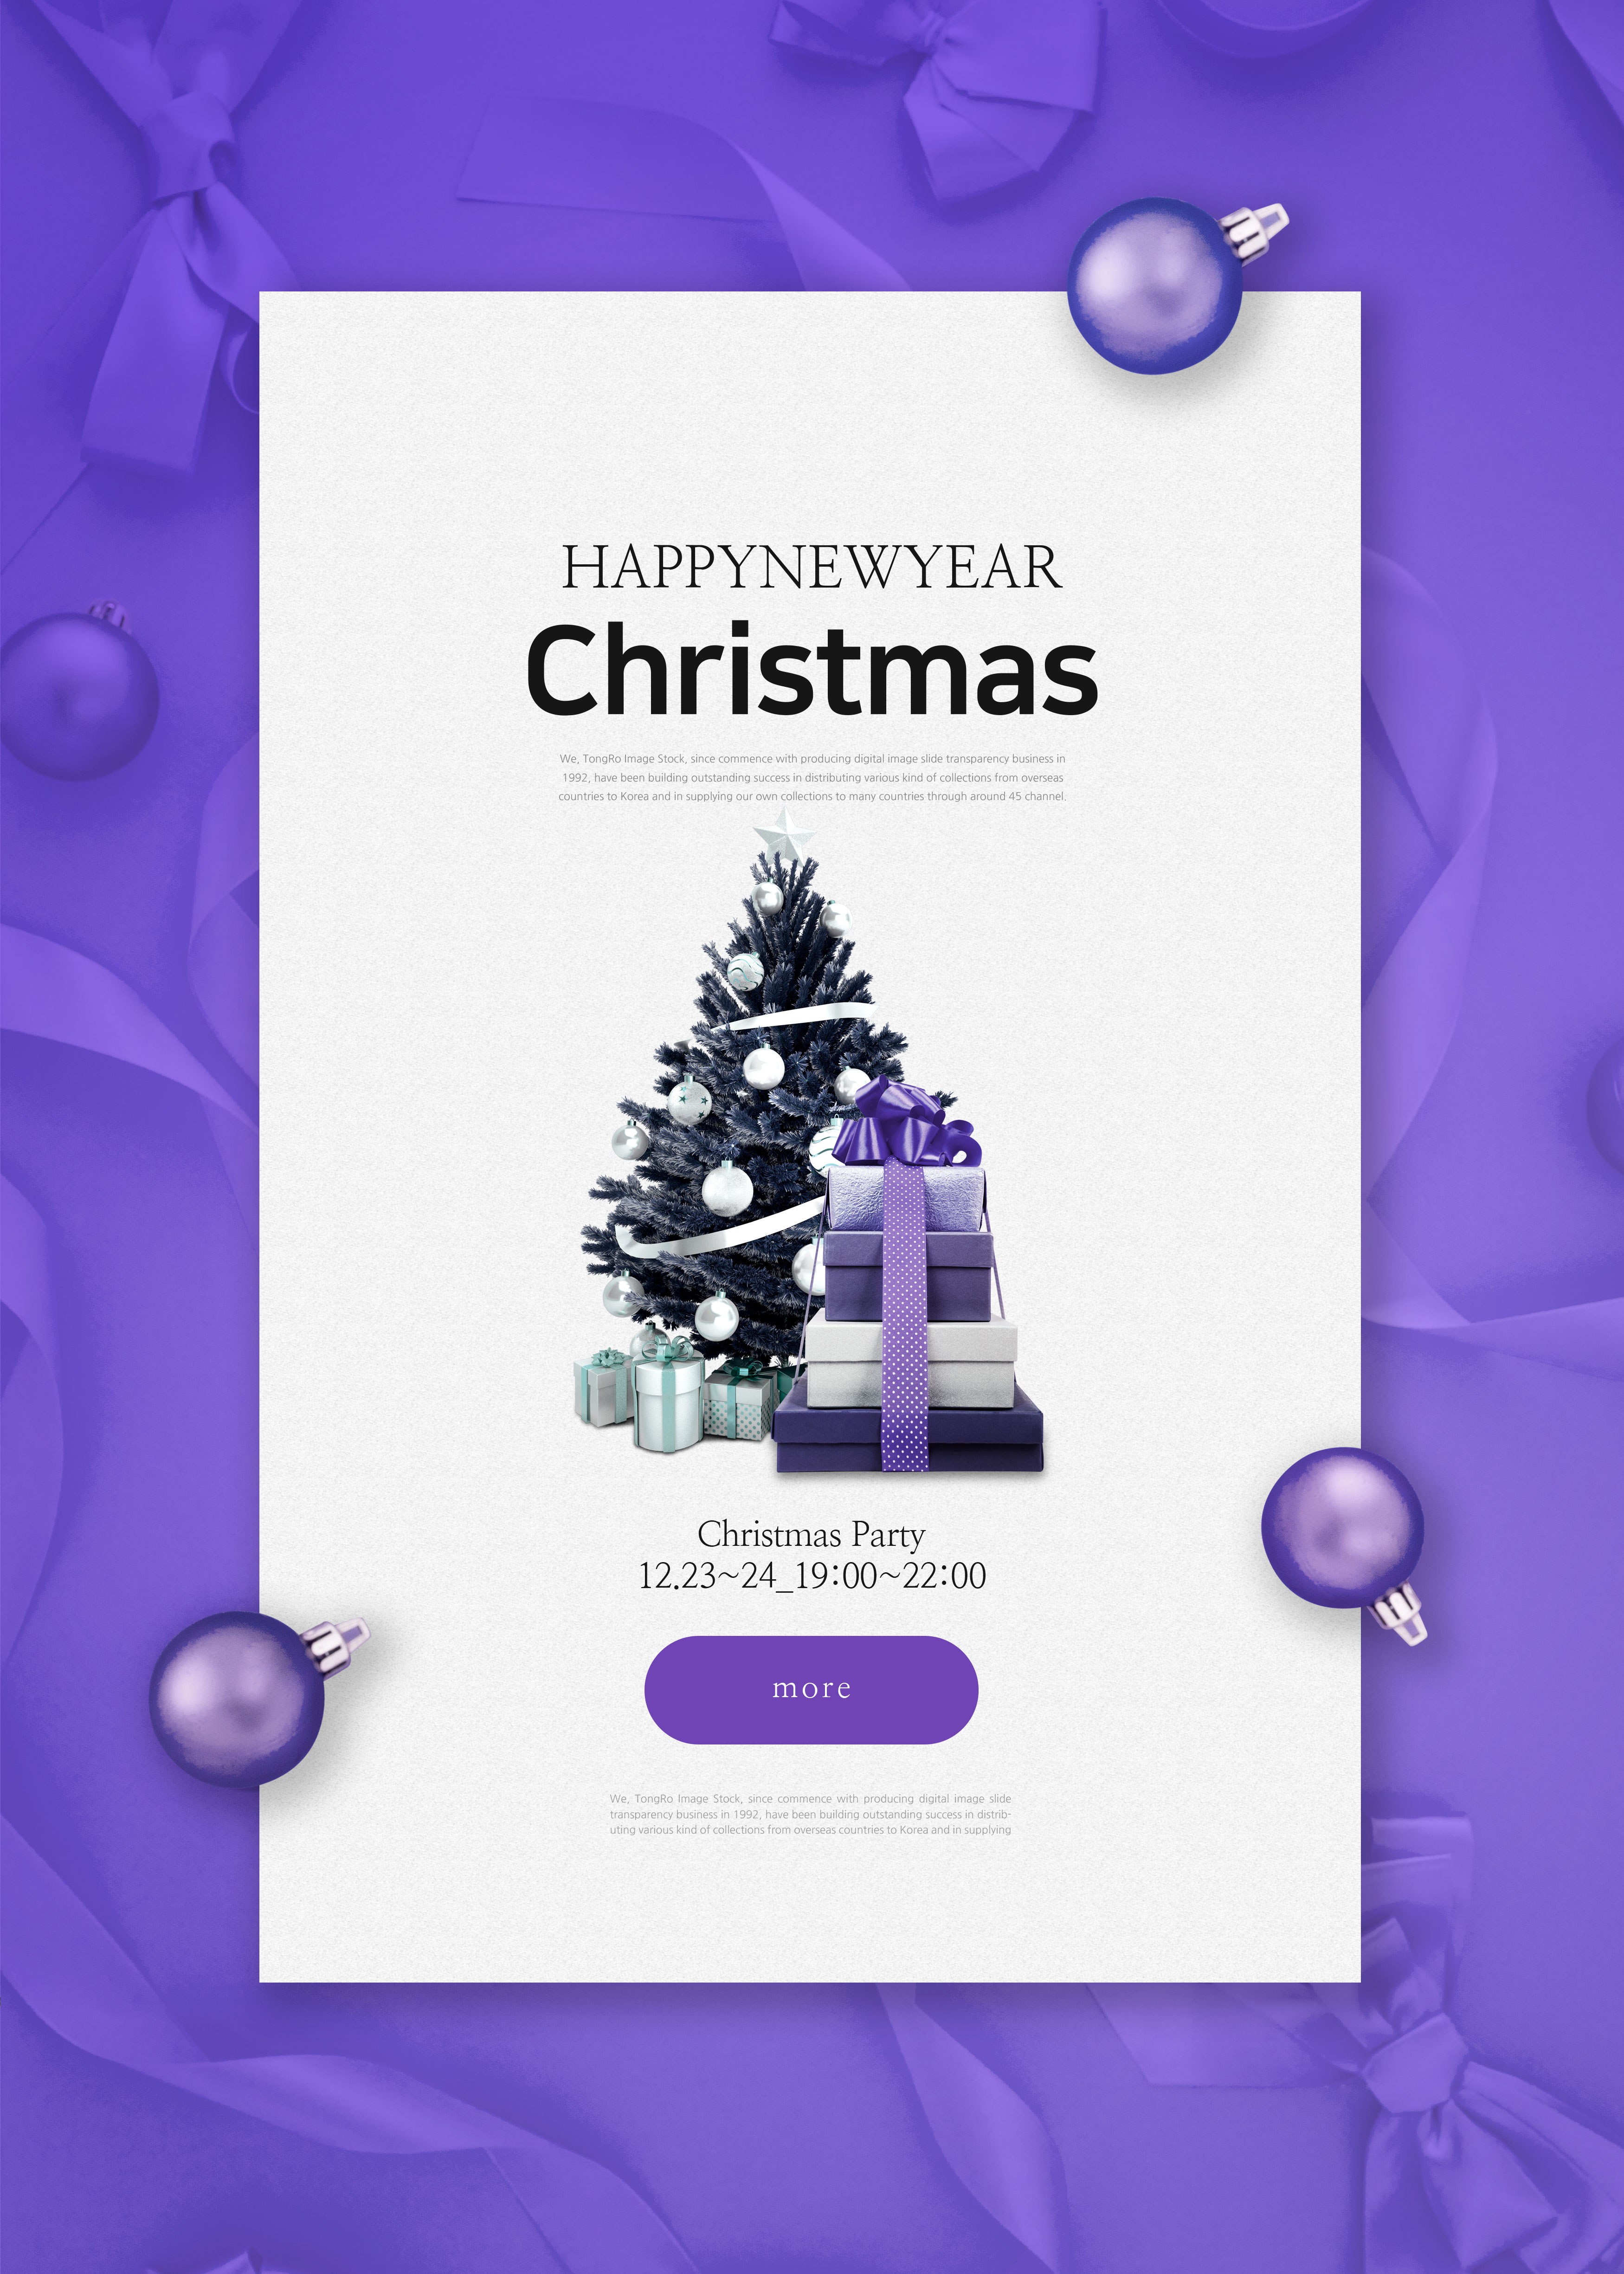 紫色系圣诞/新年派对活动邀请海报模板[PSD]插图